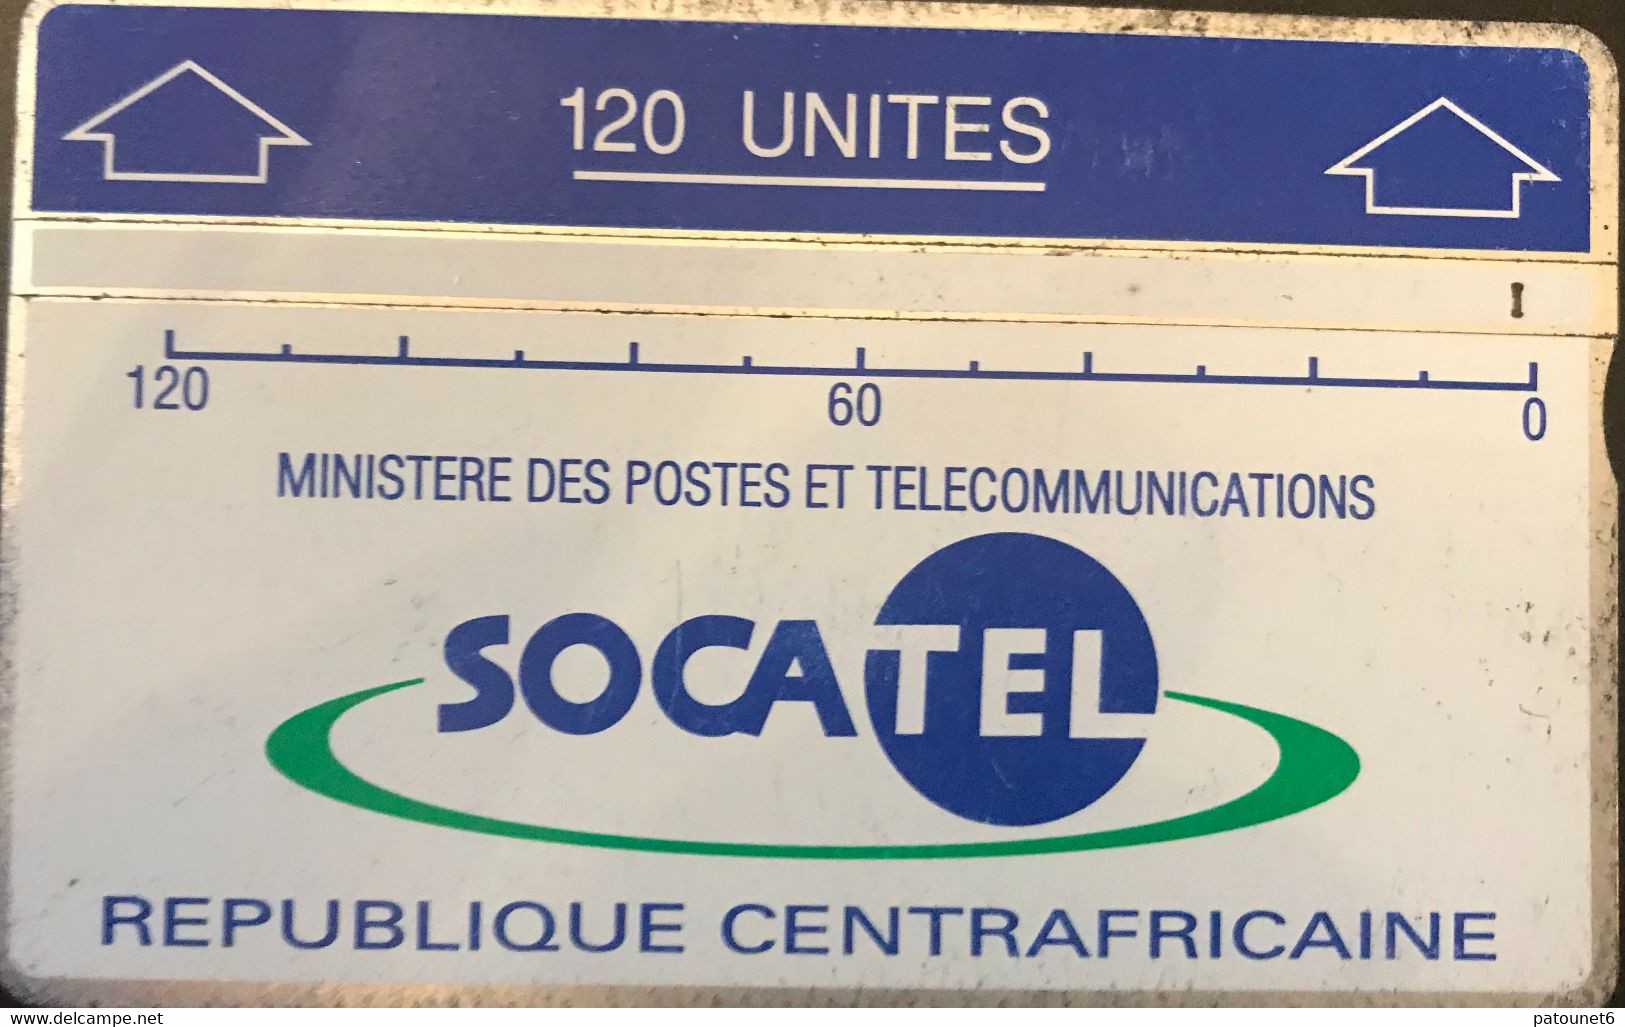 REPUBLIQUE CENTRAFRICAINE  -  L&G  -  SOCATEL  -  120 Unités (bleu) - Central African Republic